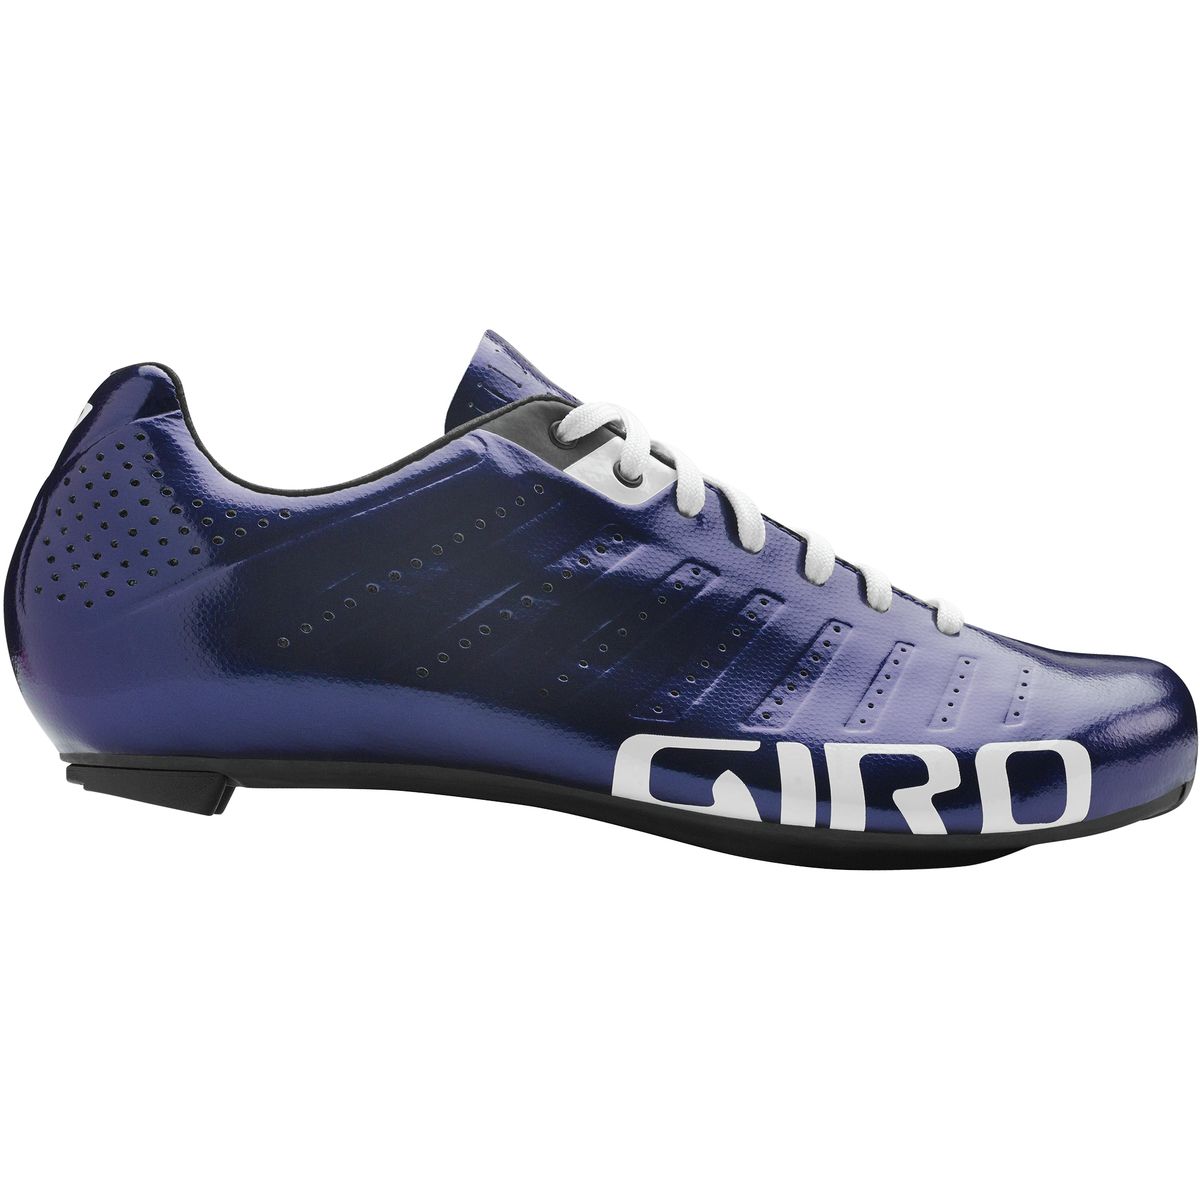 Giro Empire SLX Cycling Shoe - Men's